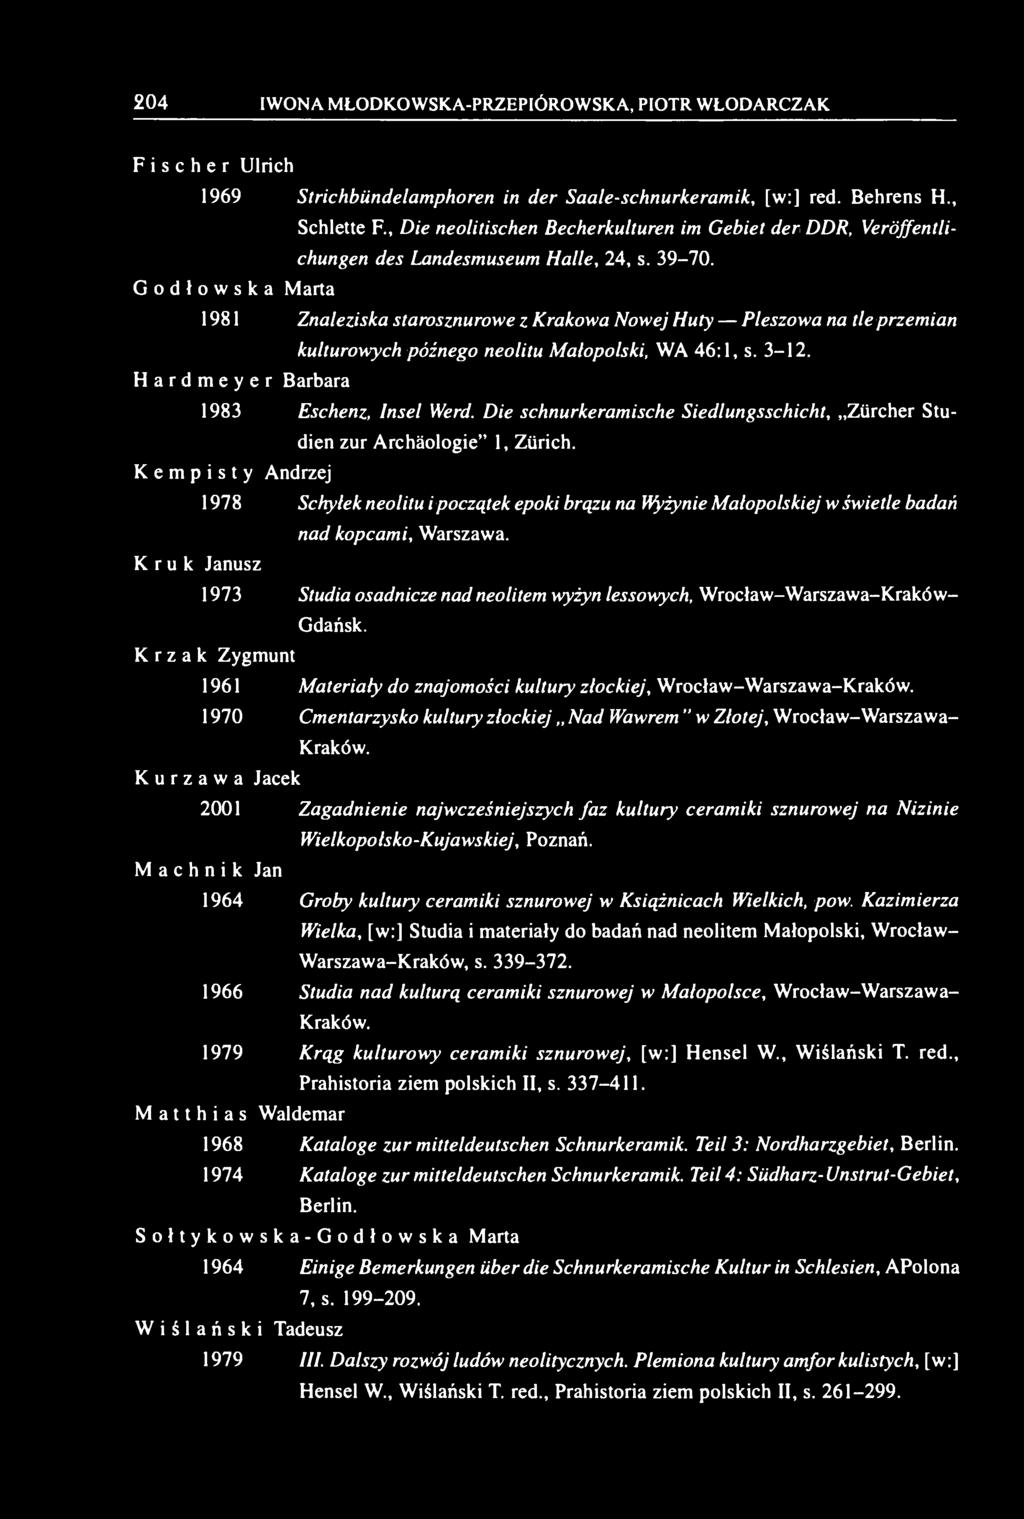 Godłowska Marta 1981 Znaleziska starosznurowe z Krakowa Nowej Huty Pleszowa na tle przemian kulturowych późnego neolitu Małopolski, WA 46:1, s. 3-12. Hardmeyer Barbara 1983 Eschenz, Insel Werd.